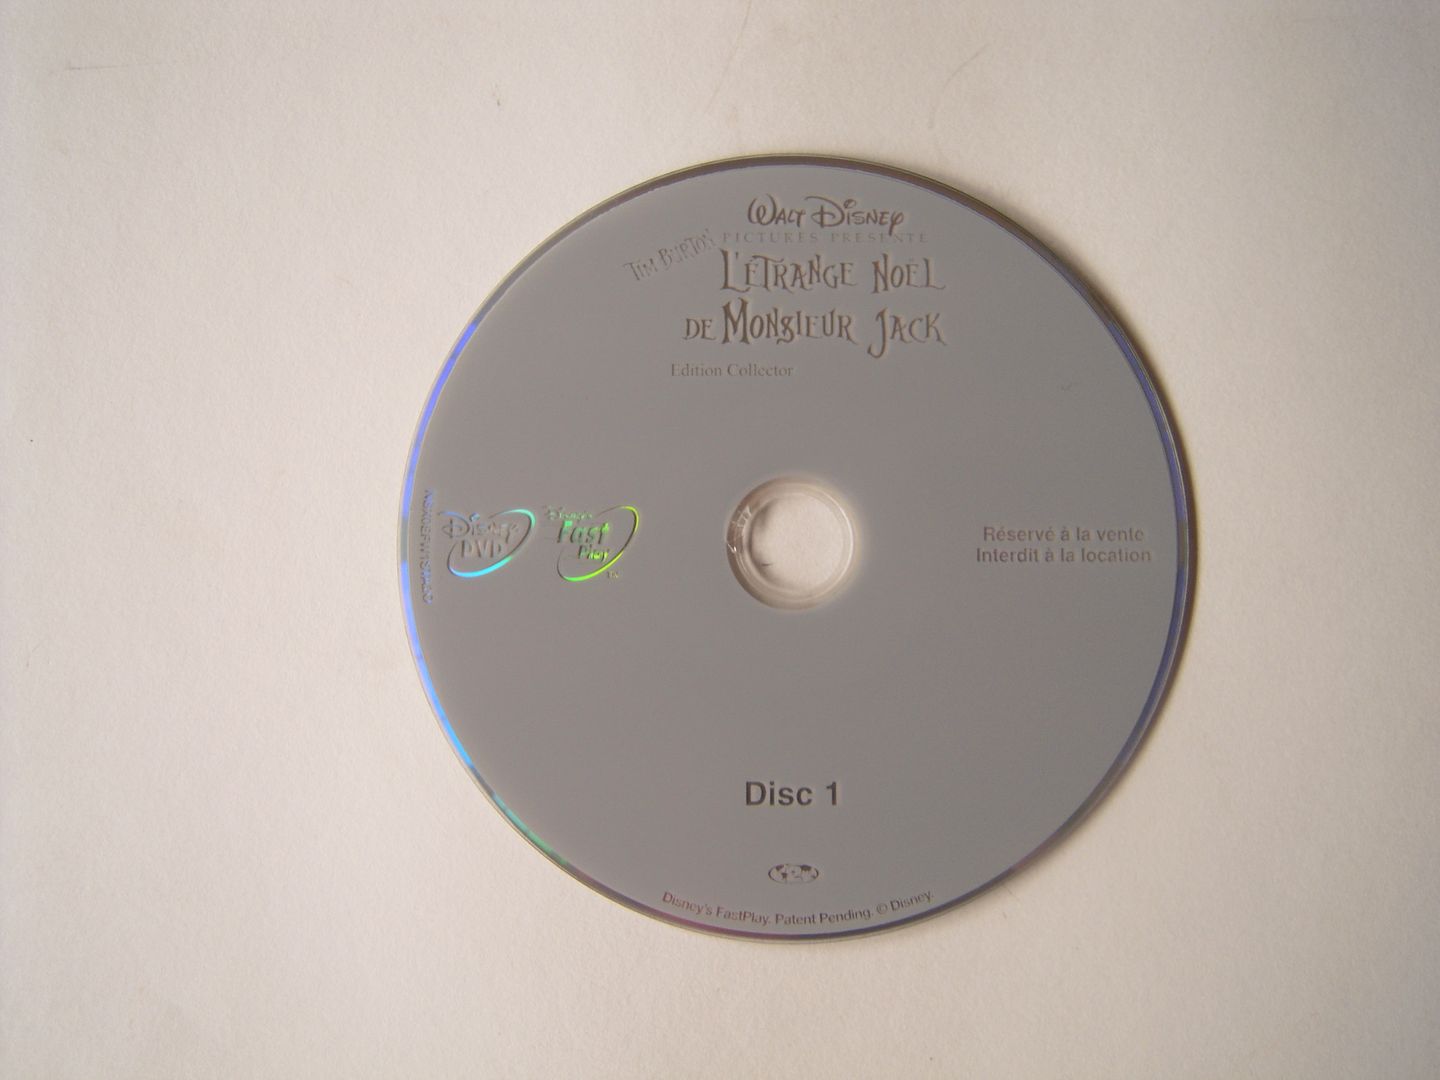 L'Etrange Noel de Monsieur Jack - DVD/Bluray DSCN2221